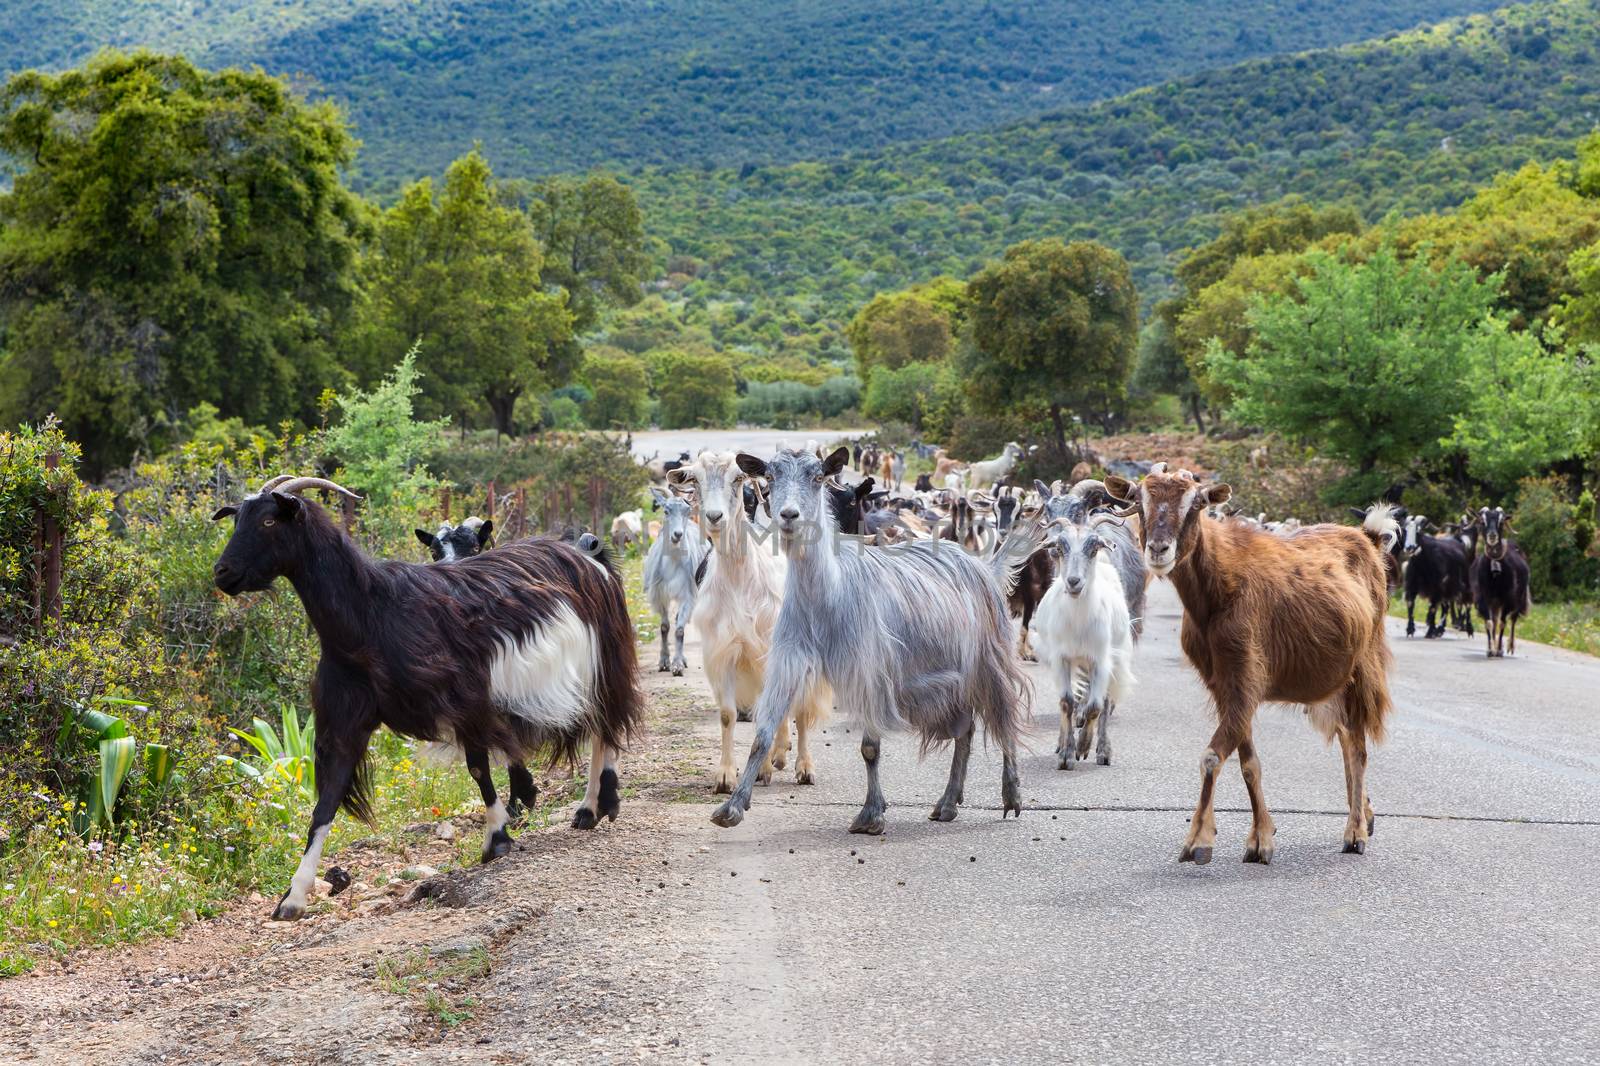 Herd of mountain goats walking on road in Greece